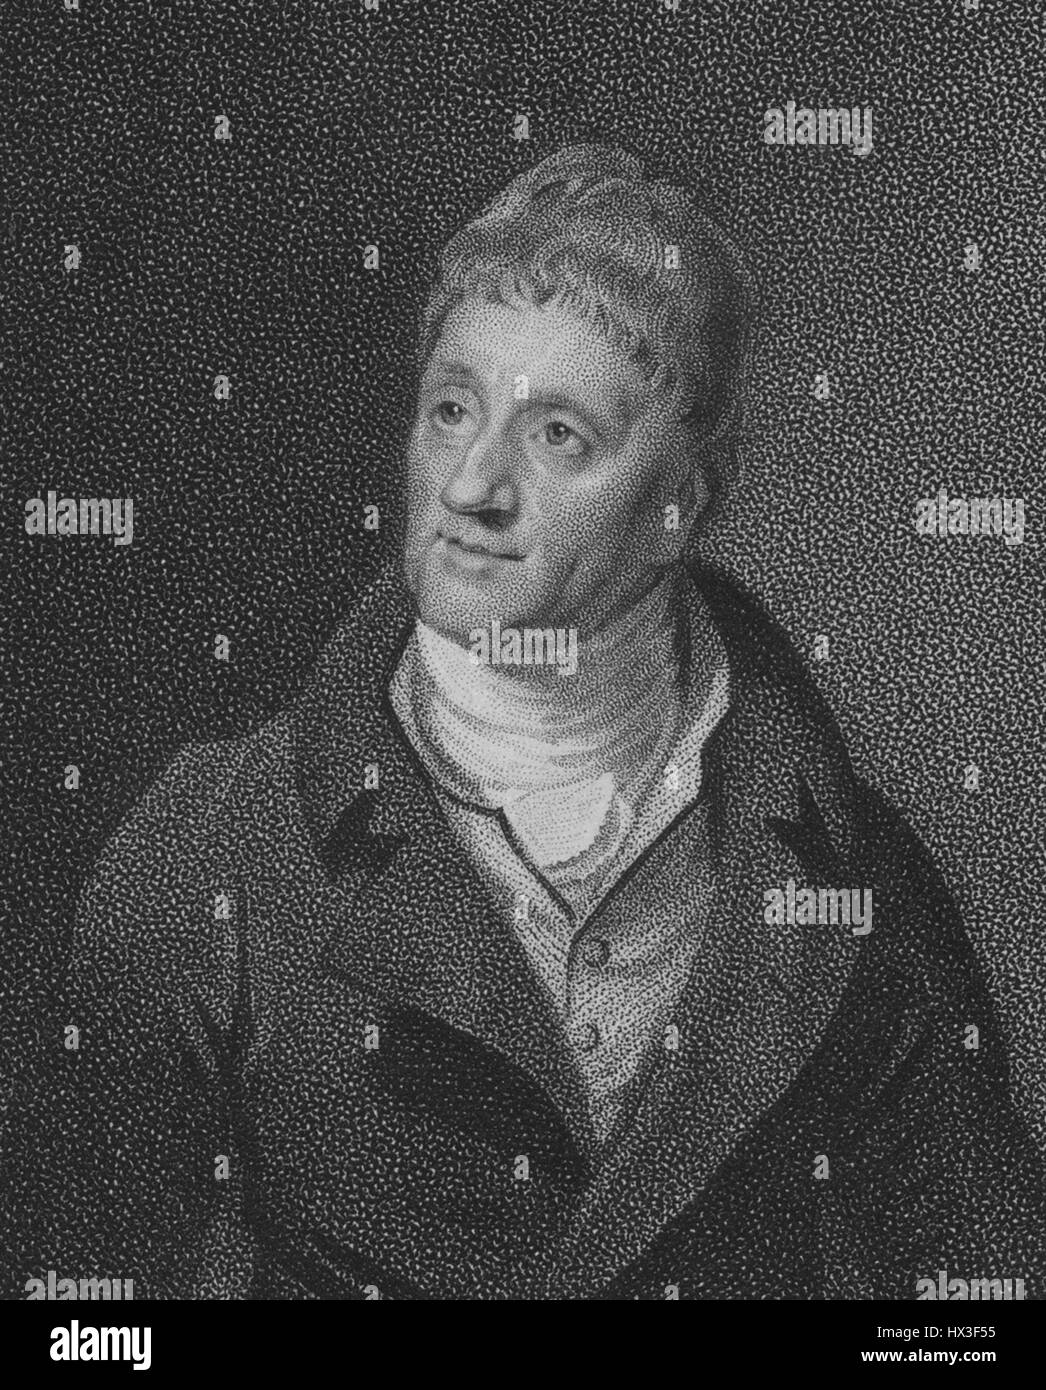 Halblängen Porträt des englischen Architekten Sir John Soane, RA, 1813. Von der New York Public Library. Stockfoto